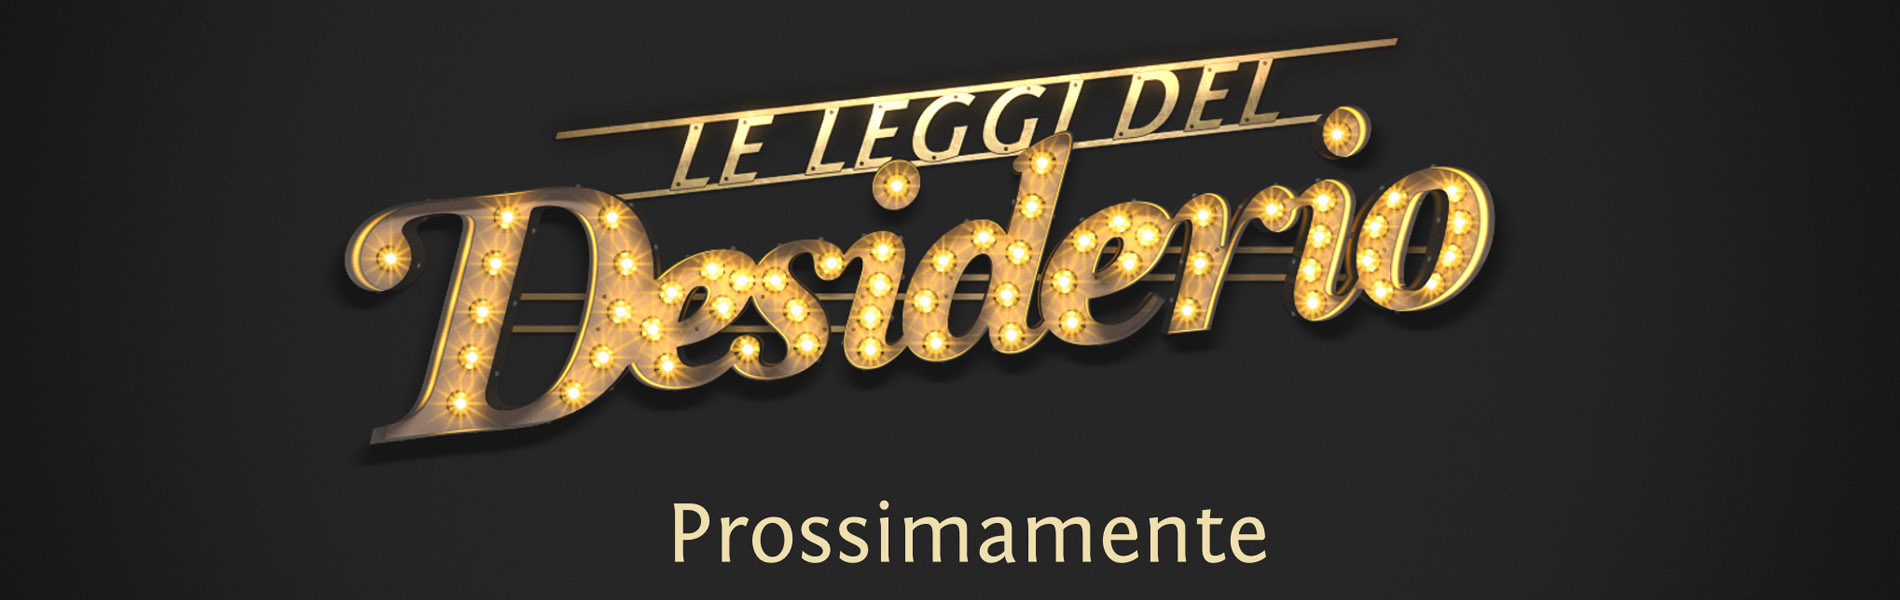 logo LLDD